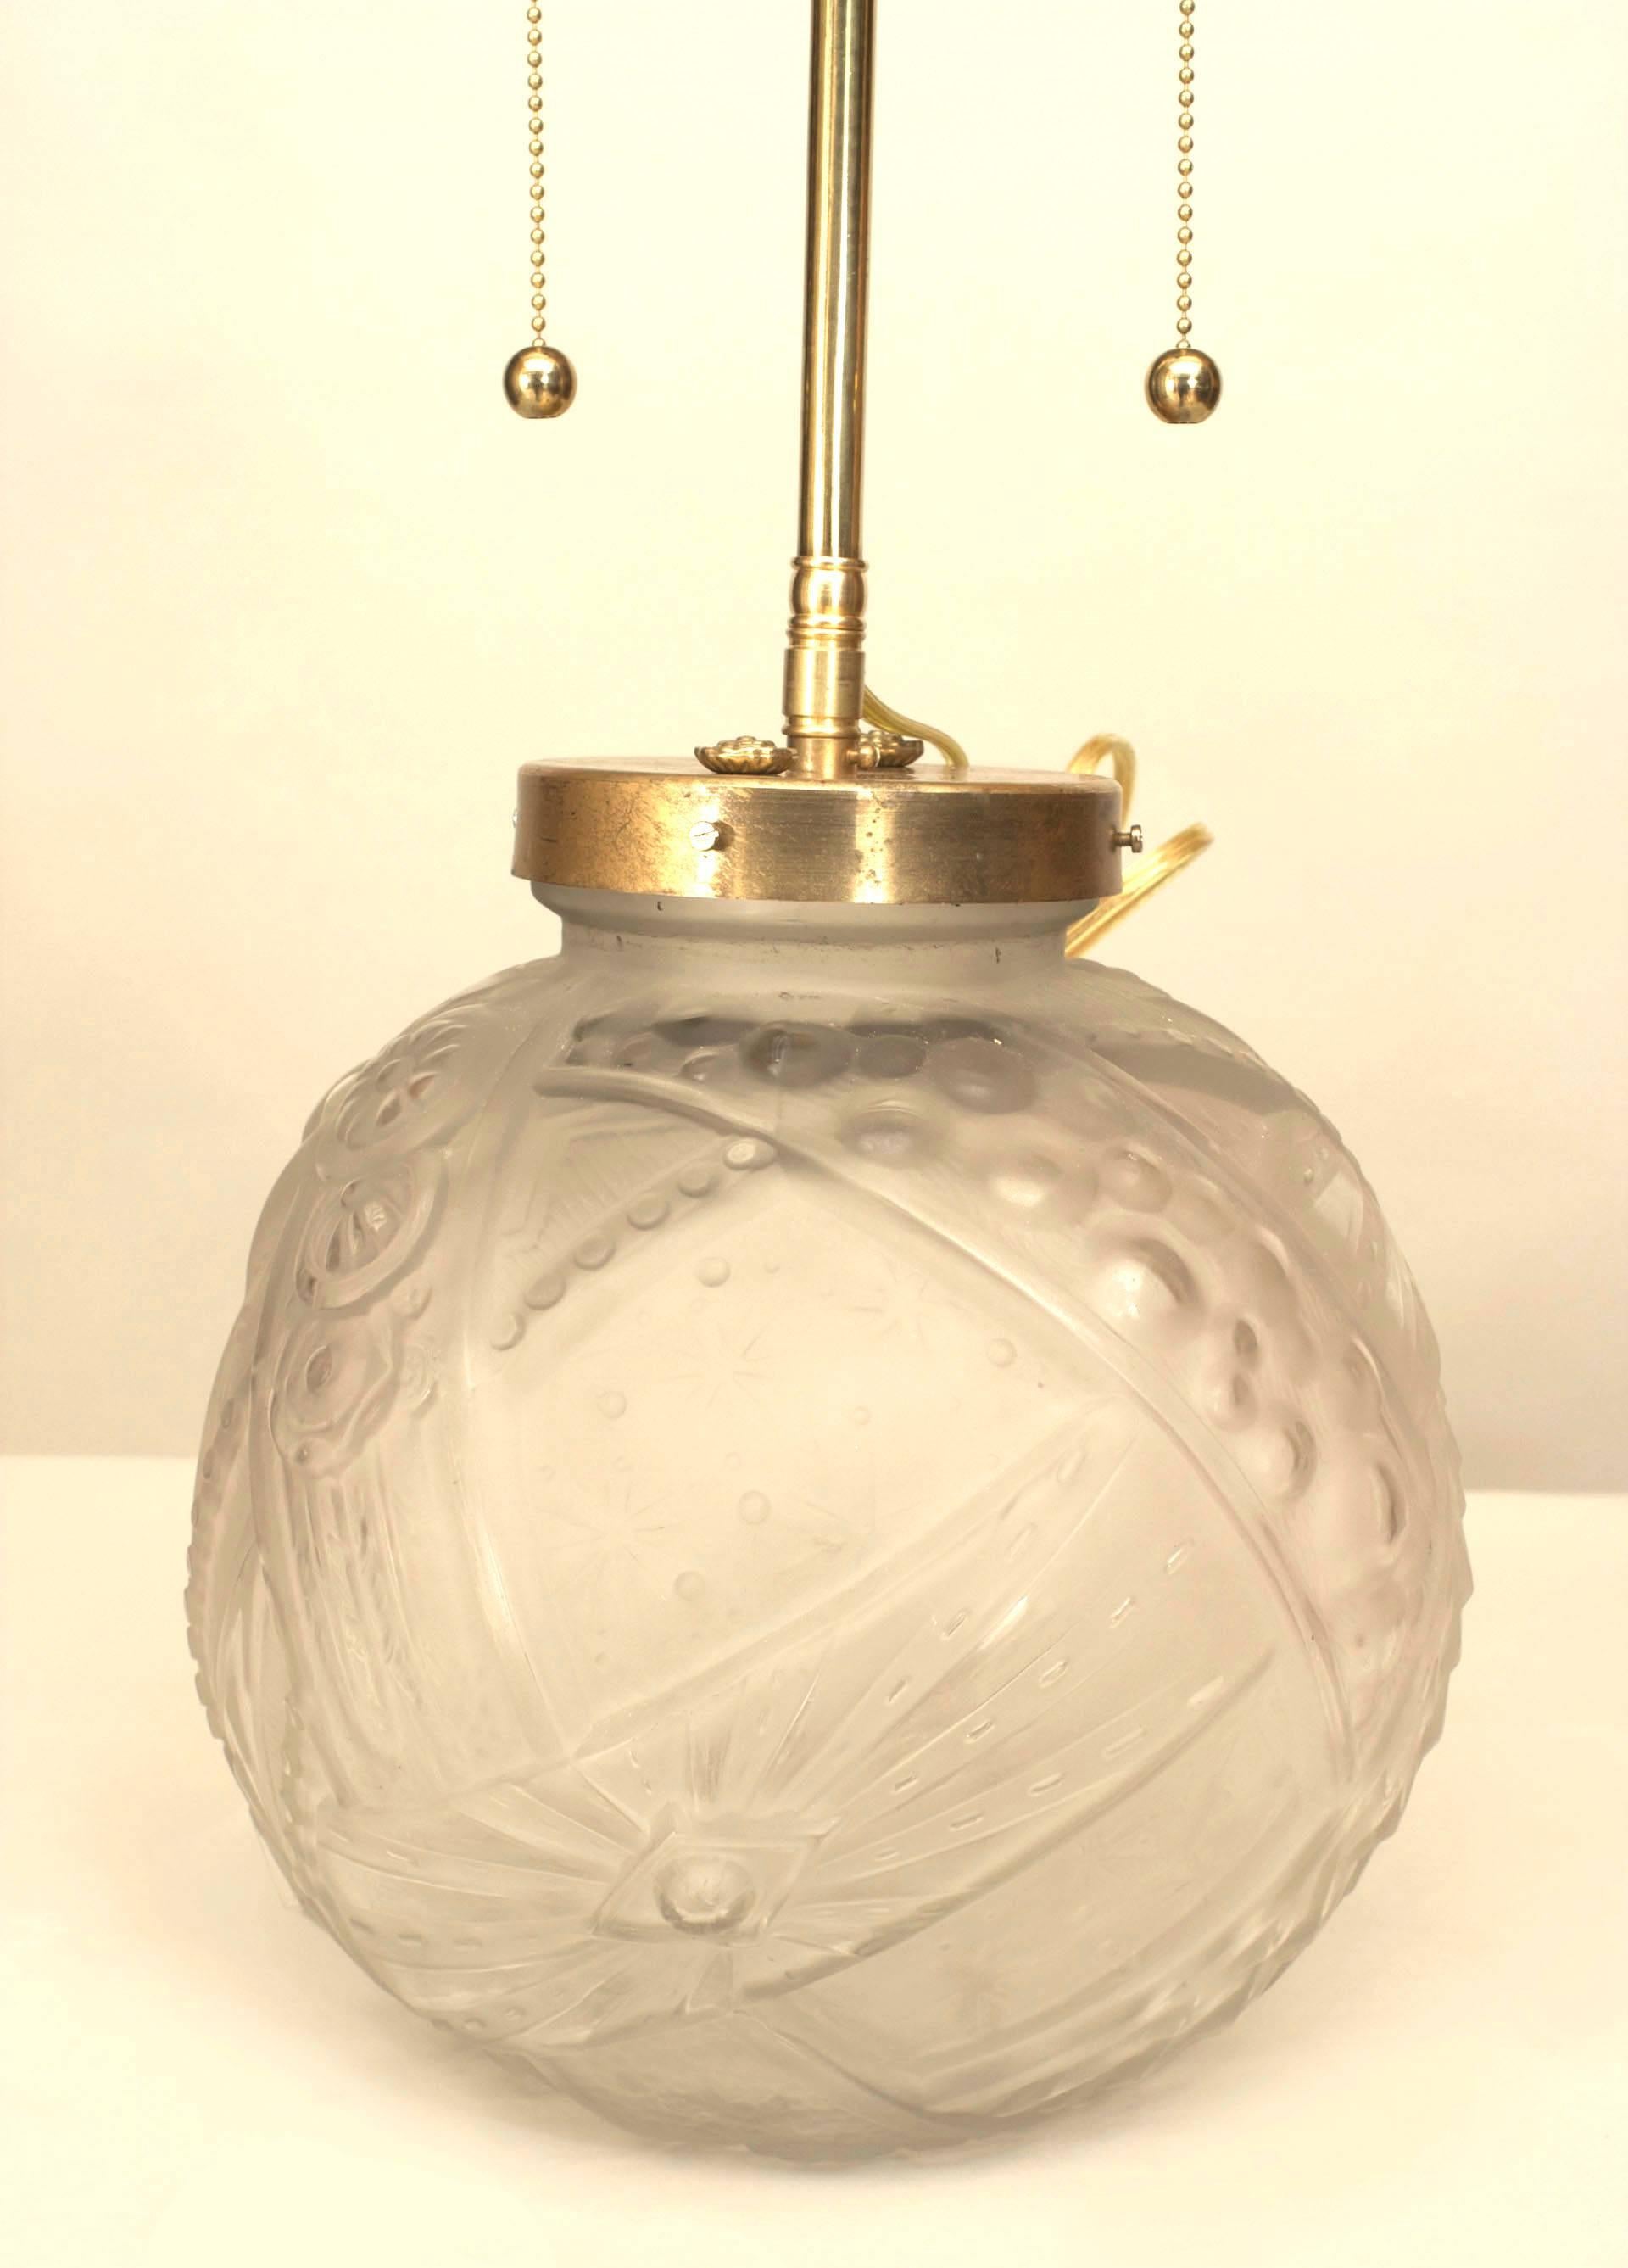 Lampe Art Déco française avec base ronde en verre géométrique dépoli (signée MULLER).
  